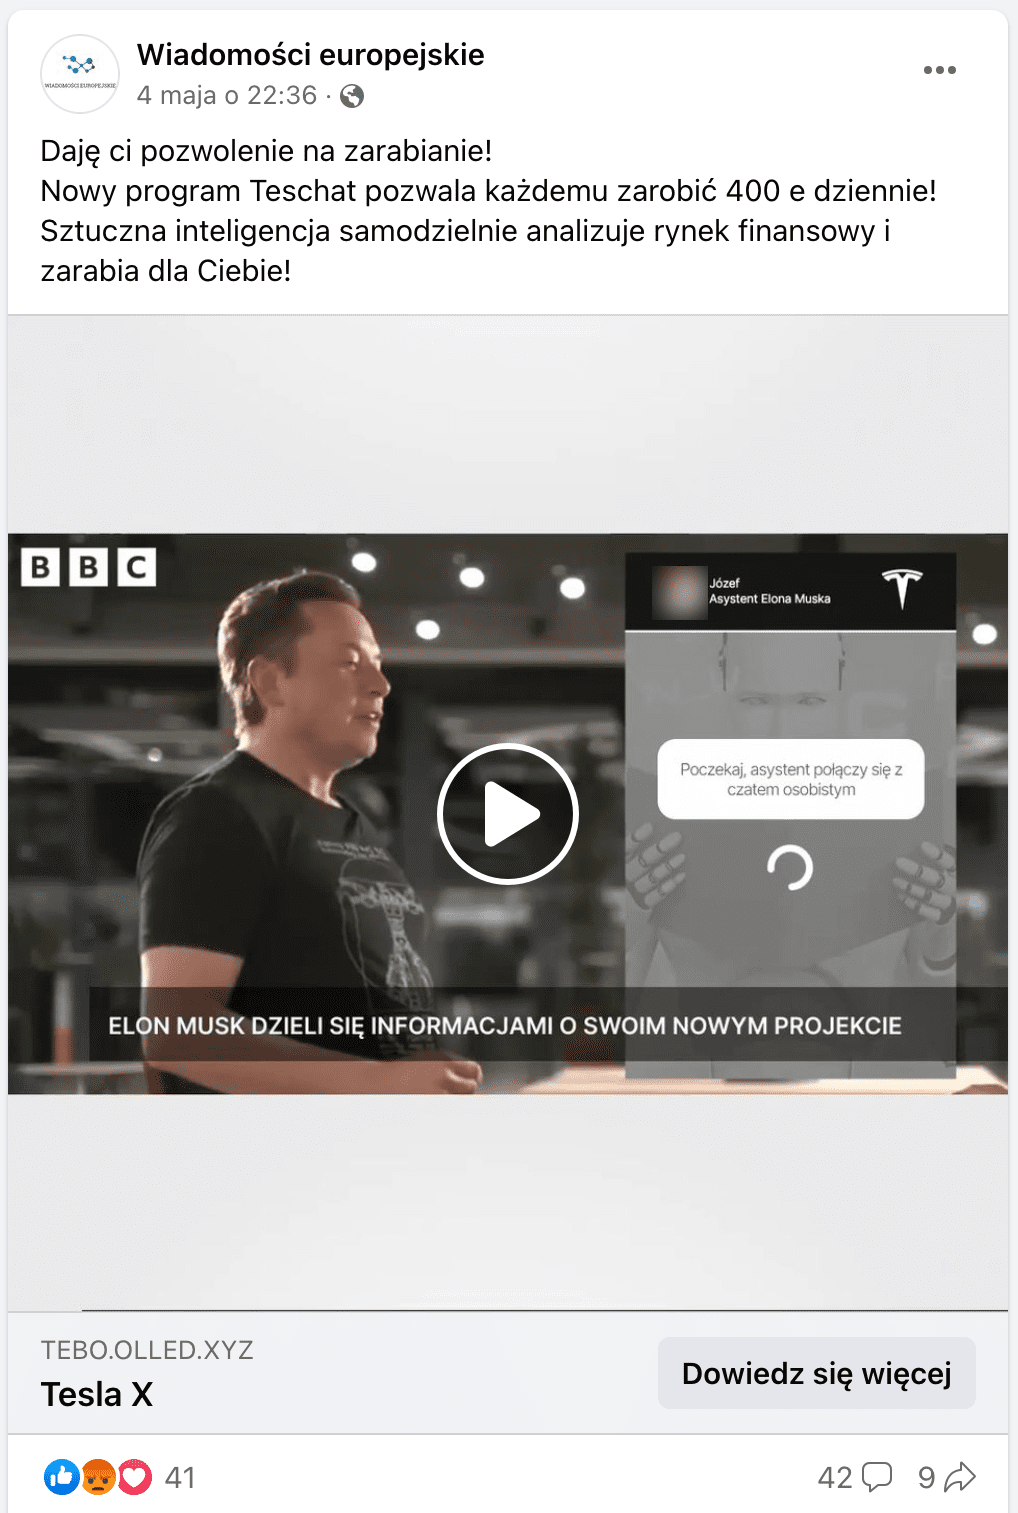 Zrzut ekranu omawianego posta na Facebooku. W kadrze udostępnionego filmu stoi Elon Musk ubrany w czarną koszulkę. W lewym górnym roku znajduje się logo brytyjskiej telewizji BBC. Po prawej stronie ekranu umieszczono okno czatu z „asystentem Elona Muska”, „Józefem”.